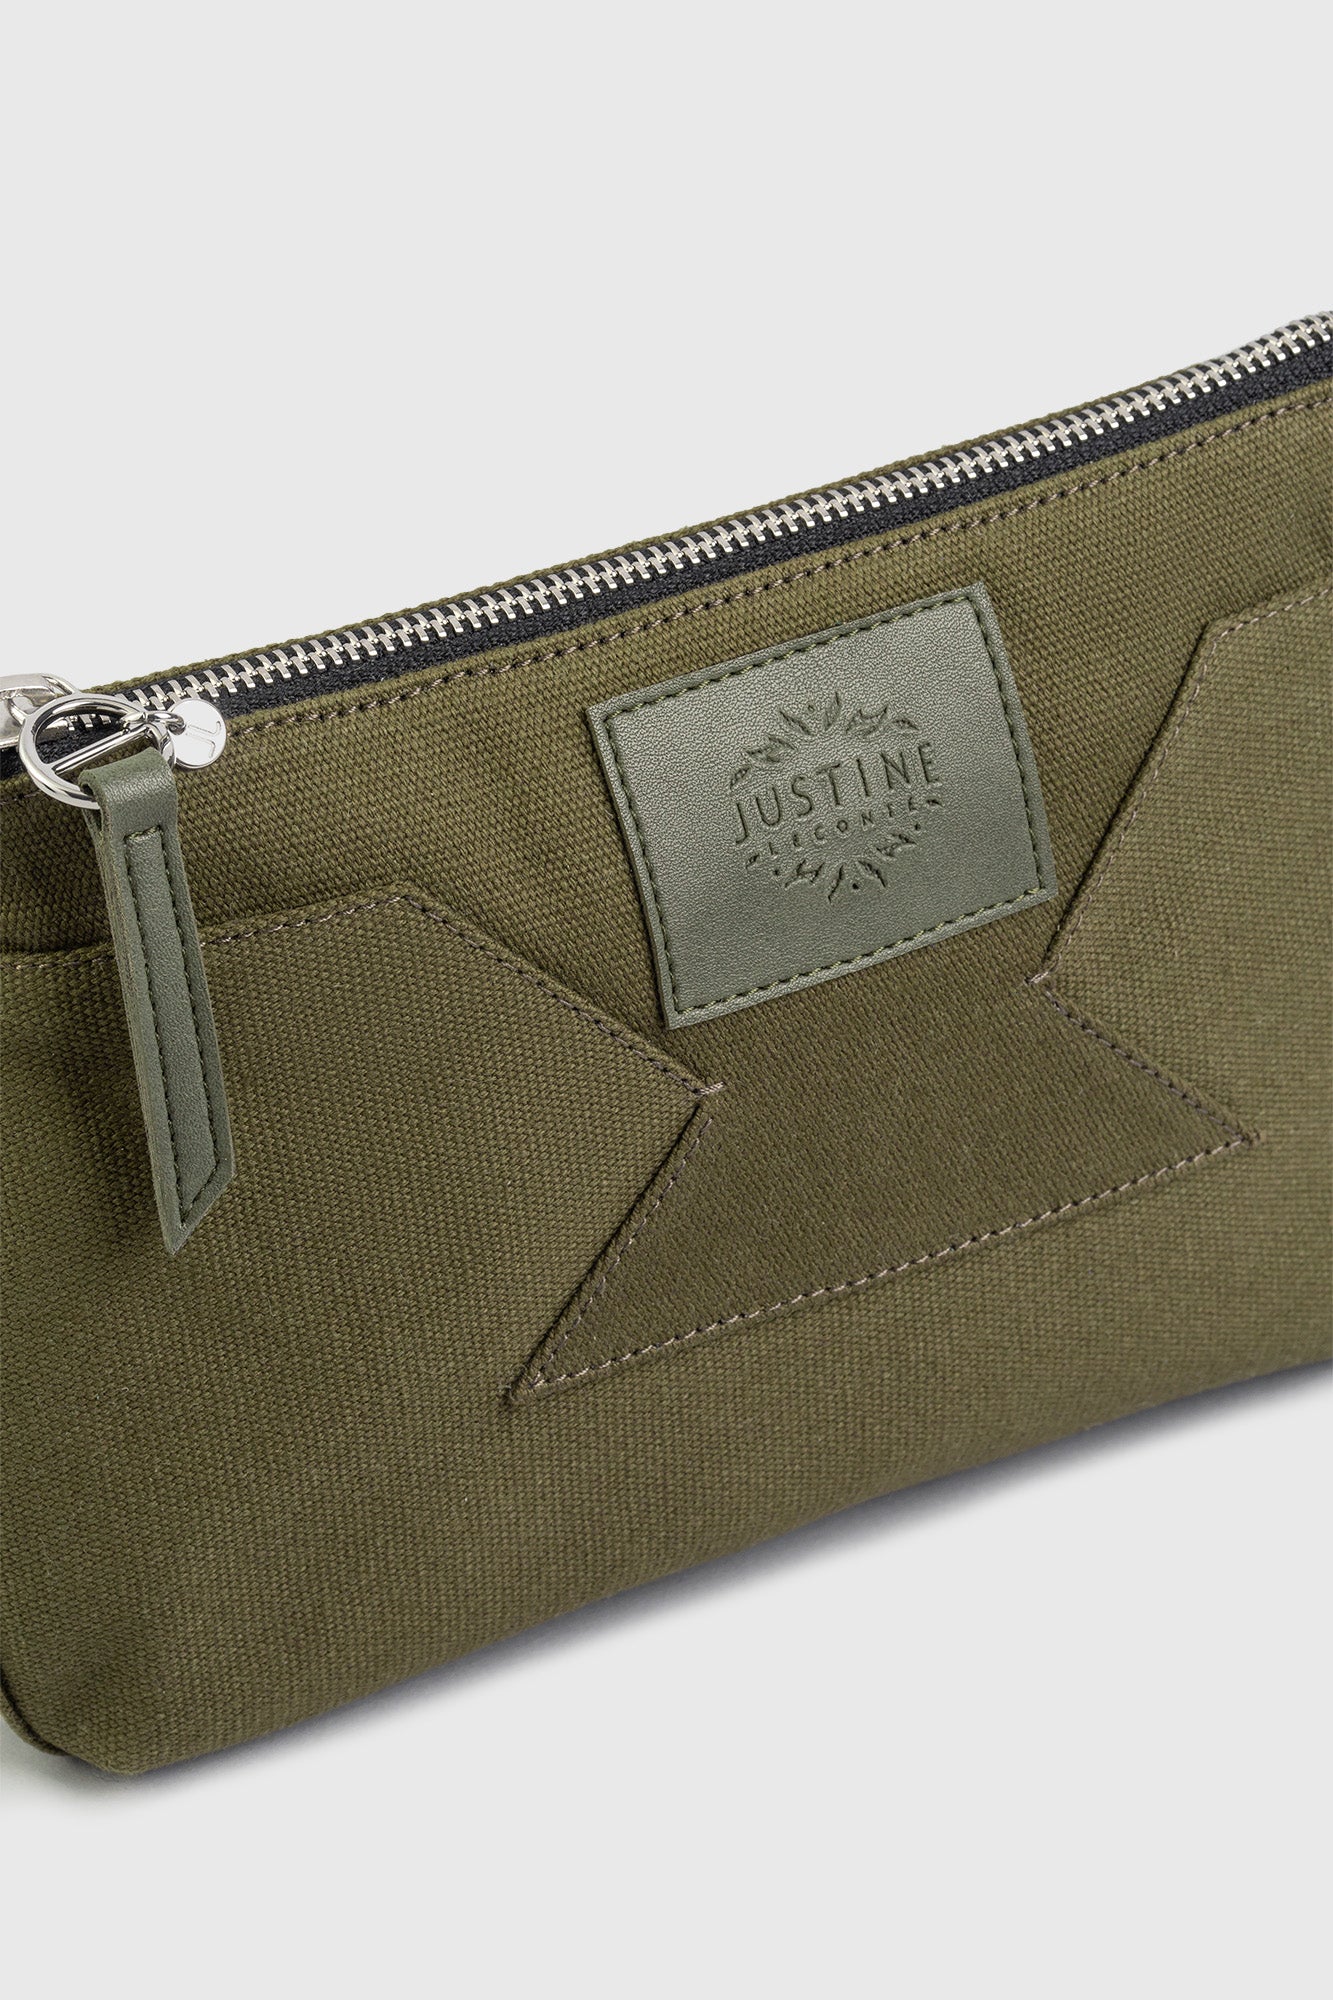 Blake Lively Designs Custom Handbag, Names It After Daughter James